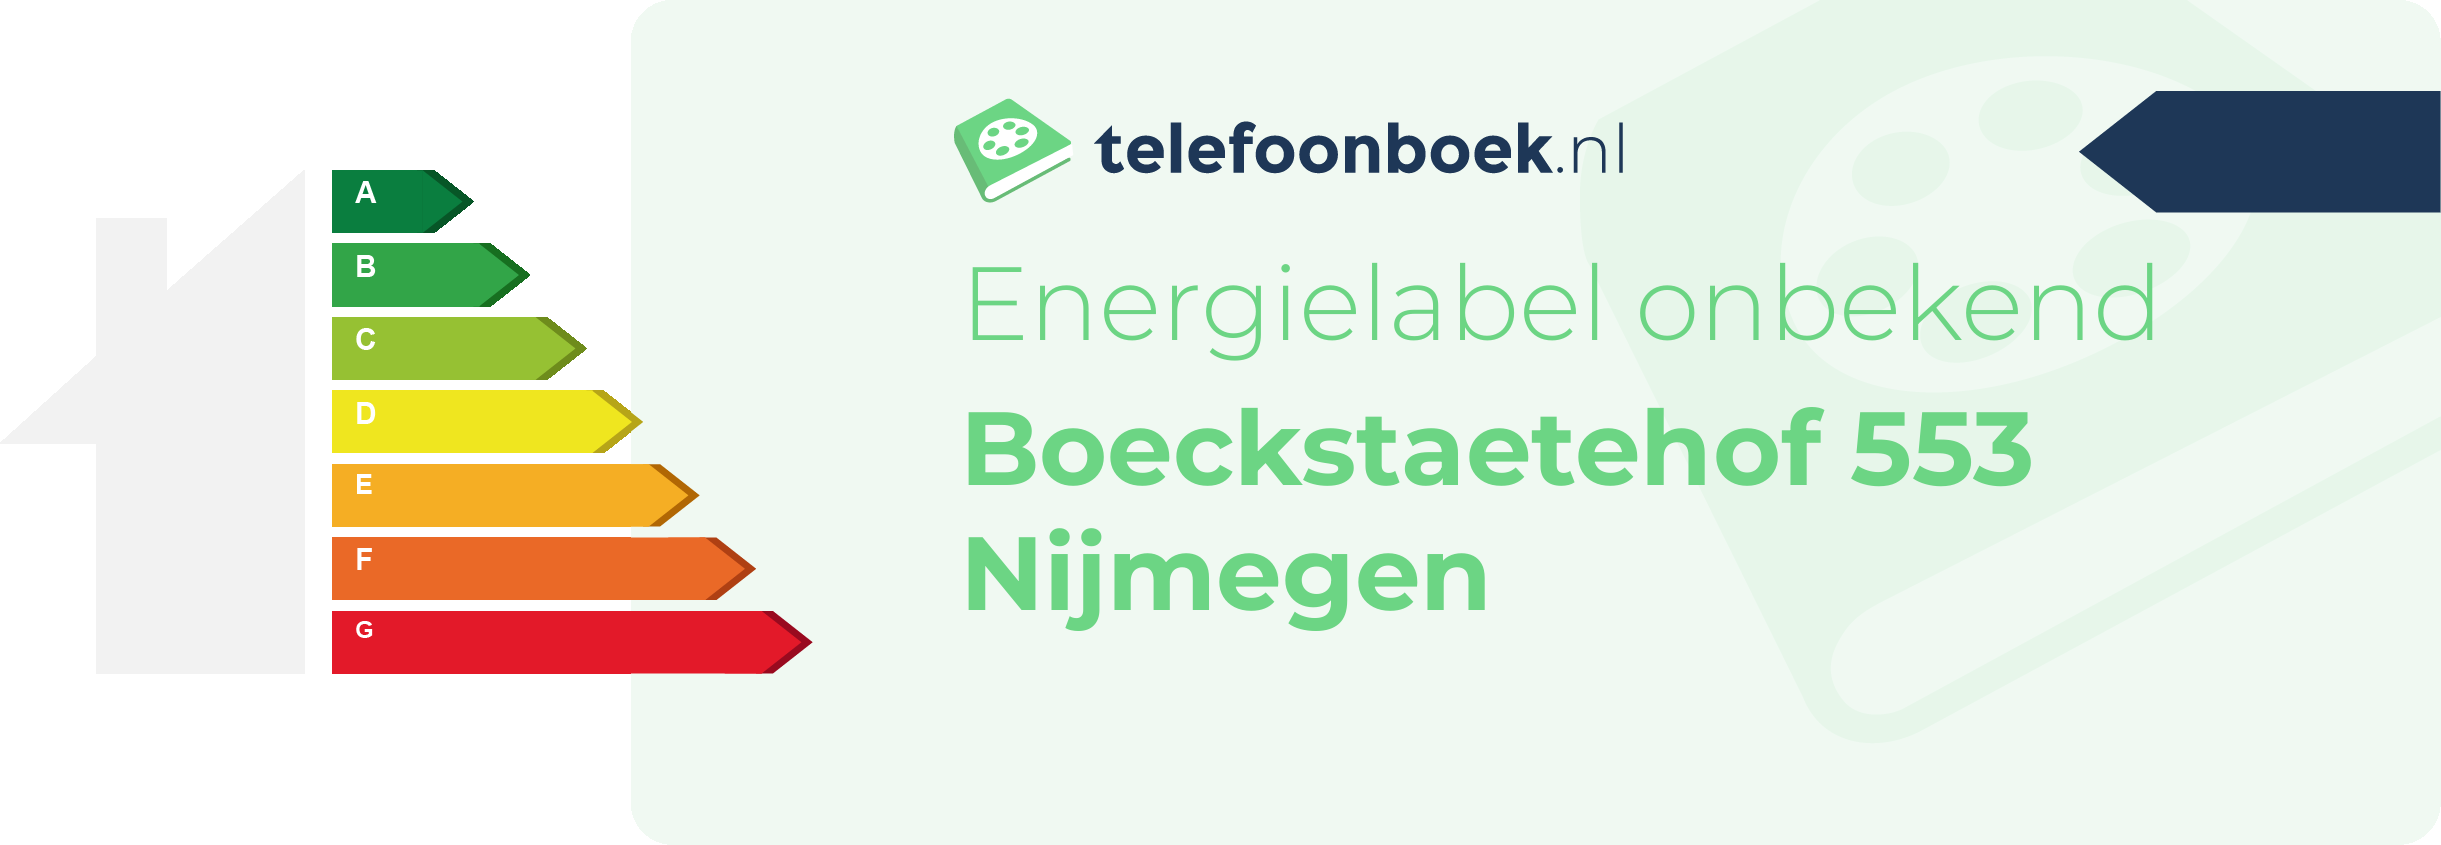 Energielabel Boeckstaetehof 553 Nijmegen